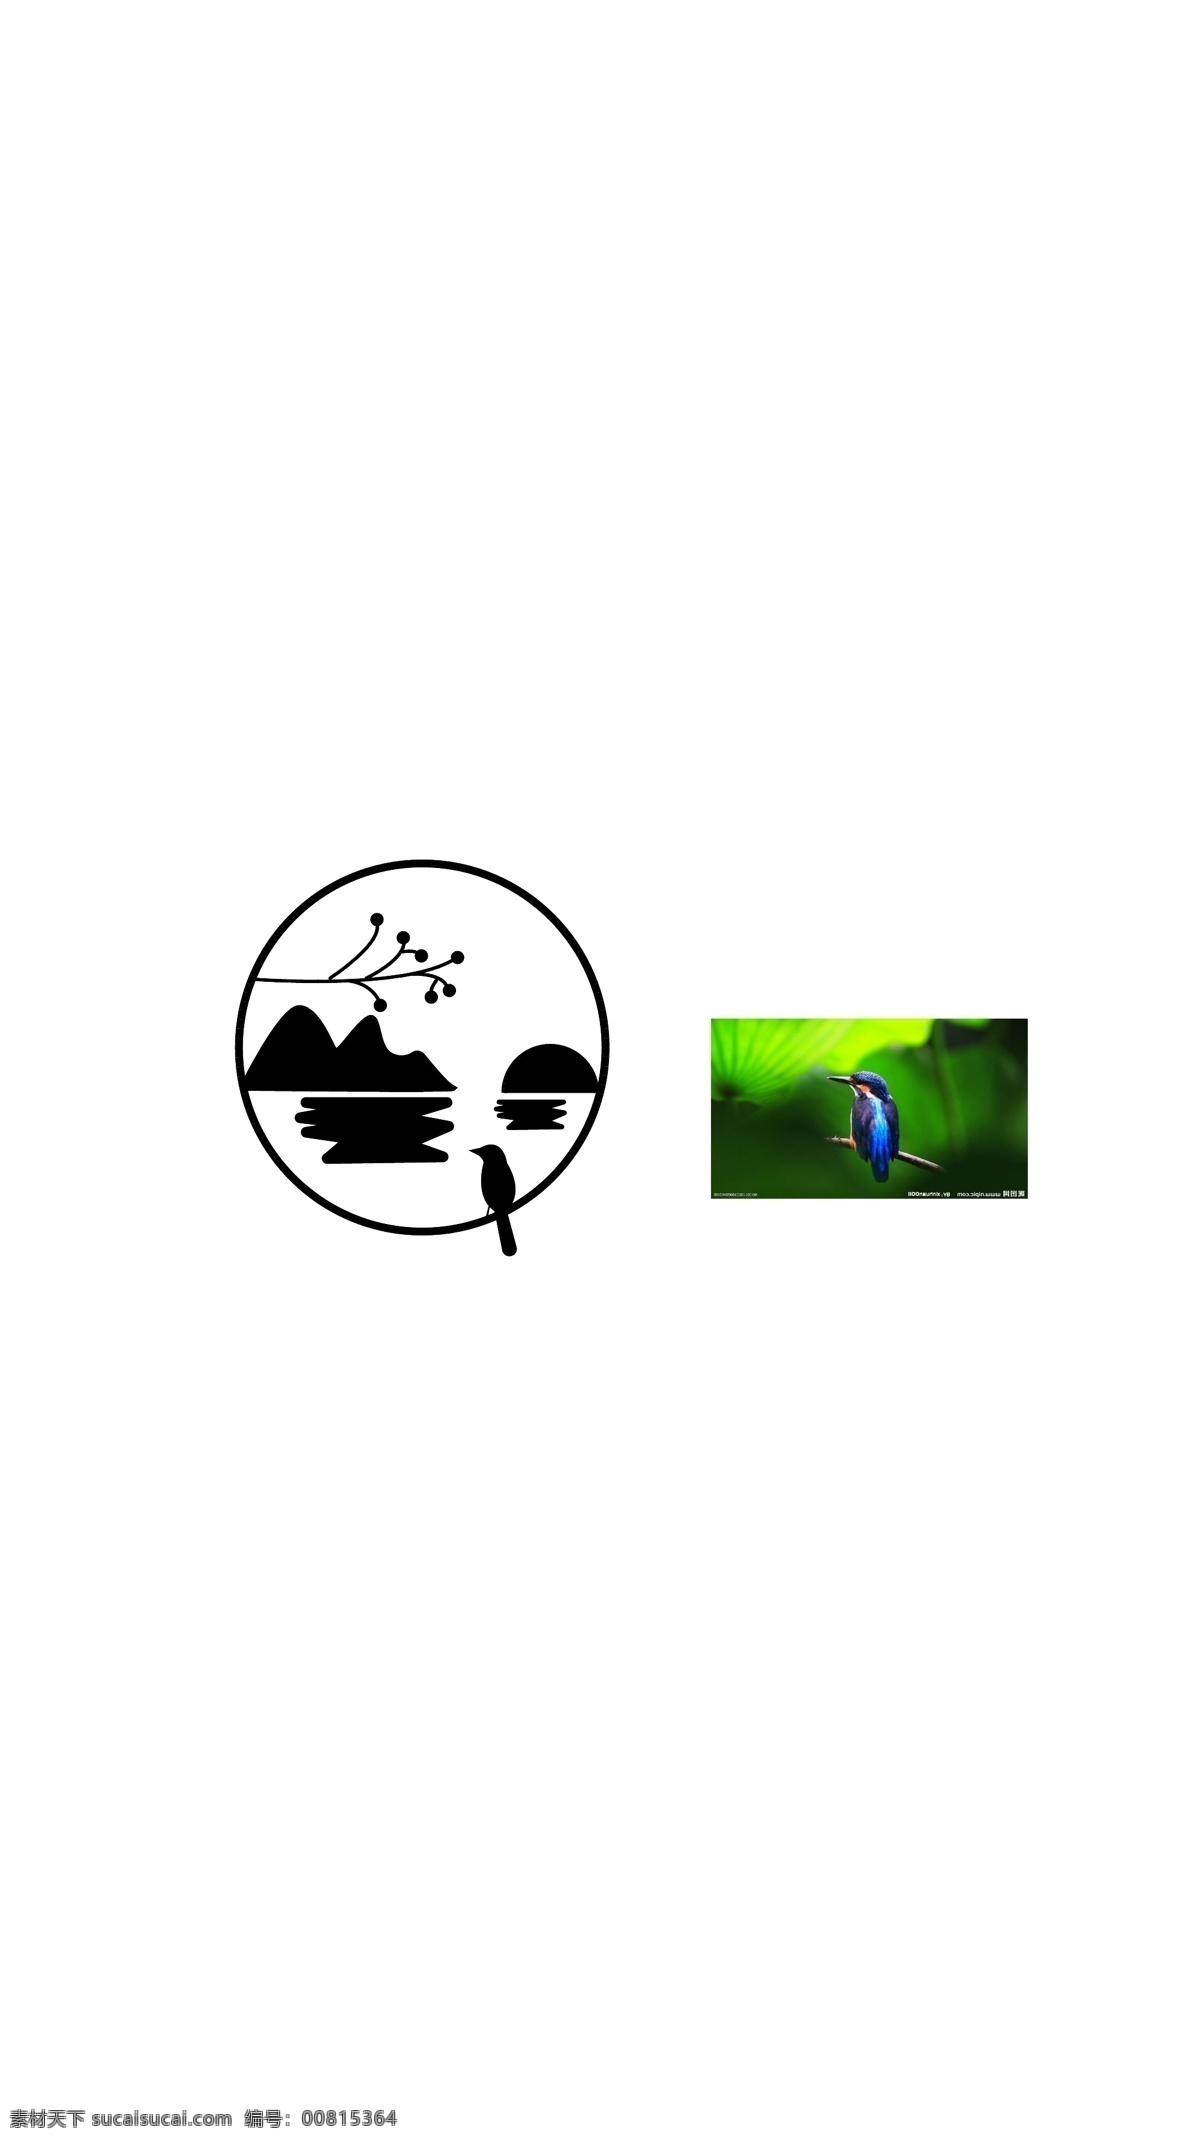 圆形 山水 小鸟 logo logo设计 树枝 标志图标 其他图标